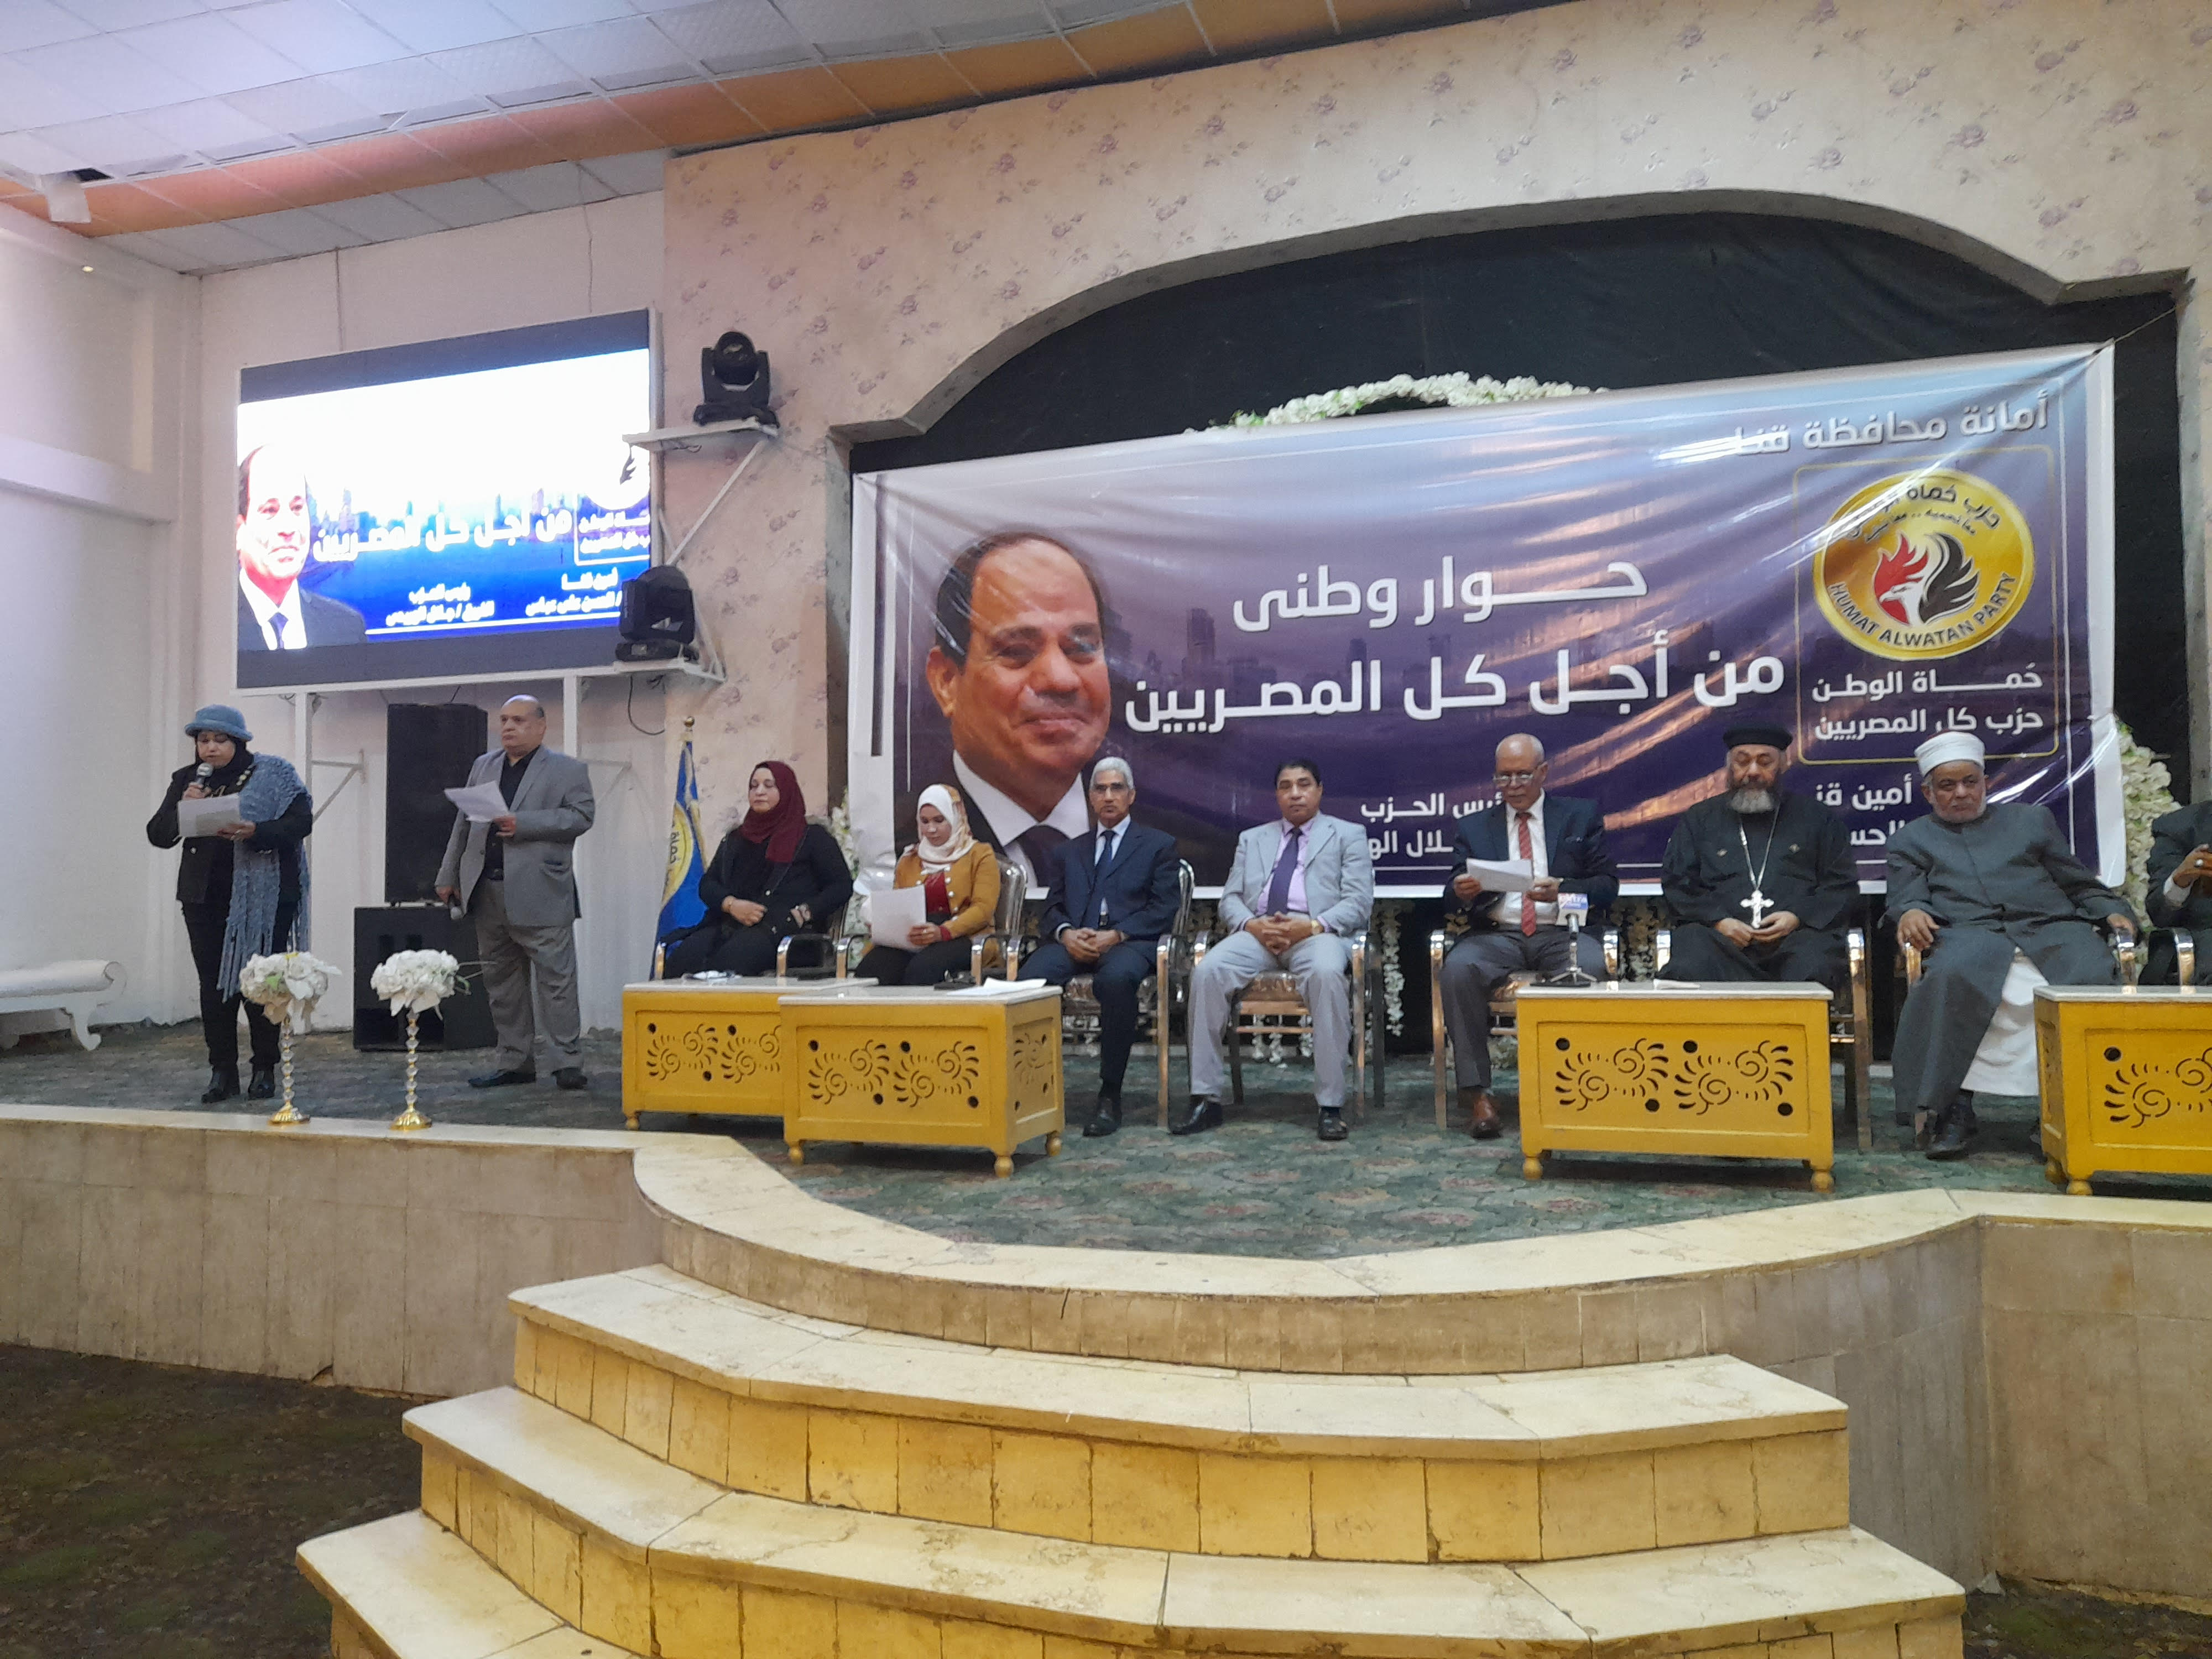  مؤتمر الحوار الوطنى من أجل كل المصريين بقنا (1)